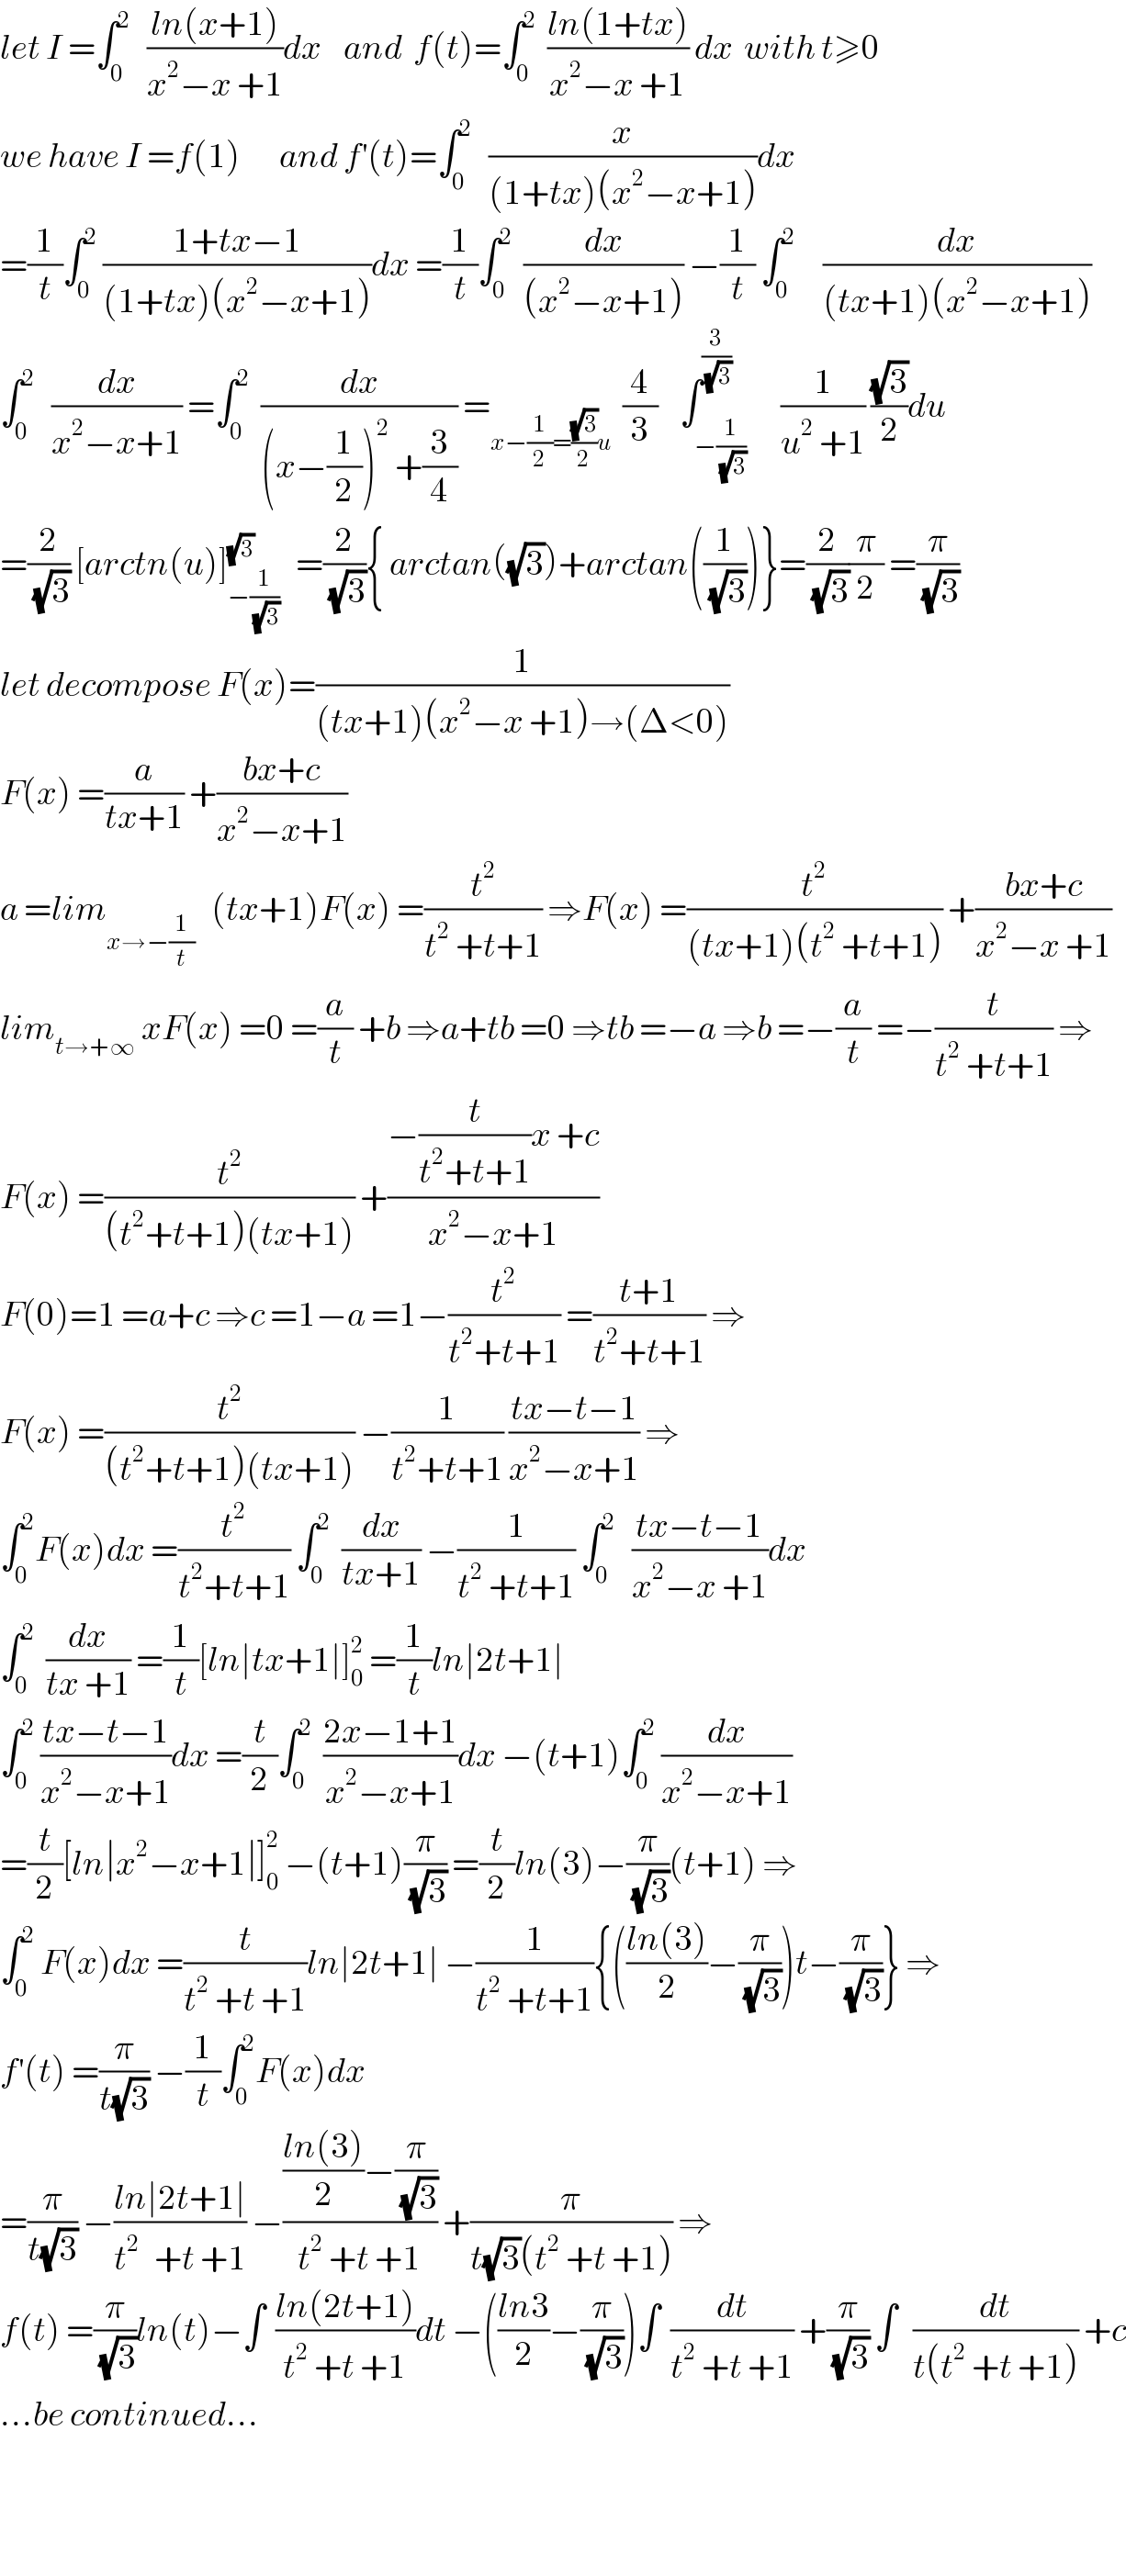 let I =∫_0 ^2    ((ln(x+1))/(x^2 −x +1))dx    and  f(t)=∫_0 ^2   ((ln(1+tx))/(x^2 −x +1)) dx  with t≥0  we have I =f(1)       and f^′ (t)=∫_0 ^2    (x/((1+tx)(x^2 −x+1)))dx  =(1/t)∫_0 ^2  ((1+tx−1)/((1+tx)(x^2 −x+1)))dx =(1/t)∫_0 ^2   (dx/((x^2 −x+1))) −(1/t) ∫_0 ^2      (dx/((tx+1)(x^2 −x+1)))  ∫_0 ^2    (dx/(x^2 −x+1)) =∫_0 ^2   (dx/((x−(1/2))^2  +(3/4))) =_(x−(1/2)=((√3)/2)u)   (4/3)    ∫_(−(1/(√3))) ^(3/(√3))      (1/(u^2  +1)) ((√3)/2)du  =(2/(√3)) [arctn(u)]_(−(1/(√3))) ^(√3)    =(2/(√3)){ arctan((√3))+arctan((1/(√3)))}=(2/(√3))(π/2) =(π/(√3))  let decompose F(x)=(1/((tx+1)(x^2 −x +1)→(Δ<0)))  F(x) =(a/(tx+1)) +((bx+c)/(x^2 −x+1))  a =lim_(x→−(1/t))    (tx+1)F(x) =(t^2 /(t^2  +t+1)) ⇒F(x) =(t^2 /((tx+1)(t^2  +t+1))) +((bx+c)/(x^2 −x +1))  lim_(t→+∞)  xF(x) =0 =(a/t) +b ⇒a+tb =0 ⇒tb =−a ⇒b =−(a/t) =−(t/(t^2  +t+1)) ⇒  F(x) =(t^2 /((t^2 +t+1)(tx+1))) +((−(t/(t^2 +t+1))x +c)/(x^2 −x+1))  F(0)=1 =a+c ⇒c =1−a =1−(t^2 /(t^2 +t+1)) =((t+1)/(t^2 +t+1)) ⇒  F(x) =(t^2 /((t^2 +t+1)(tx+1))) −(1/(t^2 +t+1)) ((tx−t−1)/(x^2 −x+1)) ⇒  ∫_0 ^2 F(x)dx =(t^2 /(t^2 +t+1)) ∫_0 ^2   (dx/(tx+1)) −(1/(t^2  +t+1)) ∫_0 ^2    ((tx−t−1)/(x^2 −x +1))dx  ∫_0 ^2   (dx/(tx +1)) =(1/t)[ln∣tx+1∣]_0 ^2  =(1/t)ln∣2t+1∣  ∫_0 ^2  ((tx−t−1)/(x^2 −x+1))dx =(t/2)∫_0 ^2   ((2x−1+1)/(x^2 −x+1))dx −(t+1)∫_0 ^2  (dx/(x^2 −x+1))  =(t/2)[ln∣x^2 −x+1∣]_0 ^2  −(t+1)(π/(√3)) =(t/2)ln(3)−(π/(√3))(t+1) ⇒  ∫_0 ^2  F(x)dx =(t/(t^2  +t +1))ln∣2t+1∣ −(1/(t^2  +t+1)){(((ln(3))/2)−(π/(√3)))t−(π/(√3))} ⇒  f^′ (t) =(π/(t(√3))) −(1/t)∫_0 ^2 F(x)dx  =(π/(t(√3))) −((ln∣2t+1∣)/(t^(2 )   +t +1)) −((((ln(3))/2)−(π/(√3)))/(t^2  +t +1)) +(π/(t(√3)(t^2  +t +1))) ⇒  f(t) =(π/(√3))ln(t)−∫  ((ln(2t+1))/(t^2  +t +1))dt −(((ln3)/2)−(π/(√3)))∫  (dt/(t^2  +t +1)) +(π/(√3)) ∫   (dt/(t(t^2  +t +1))) +c  ...be continued...      